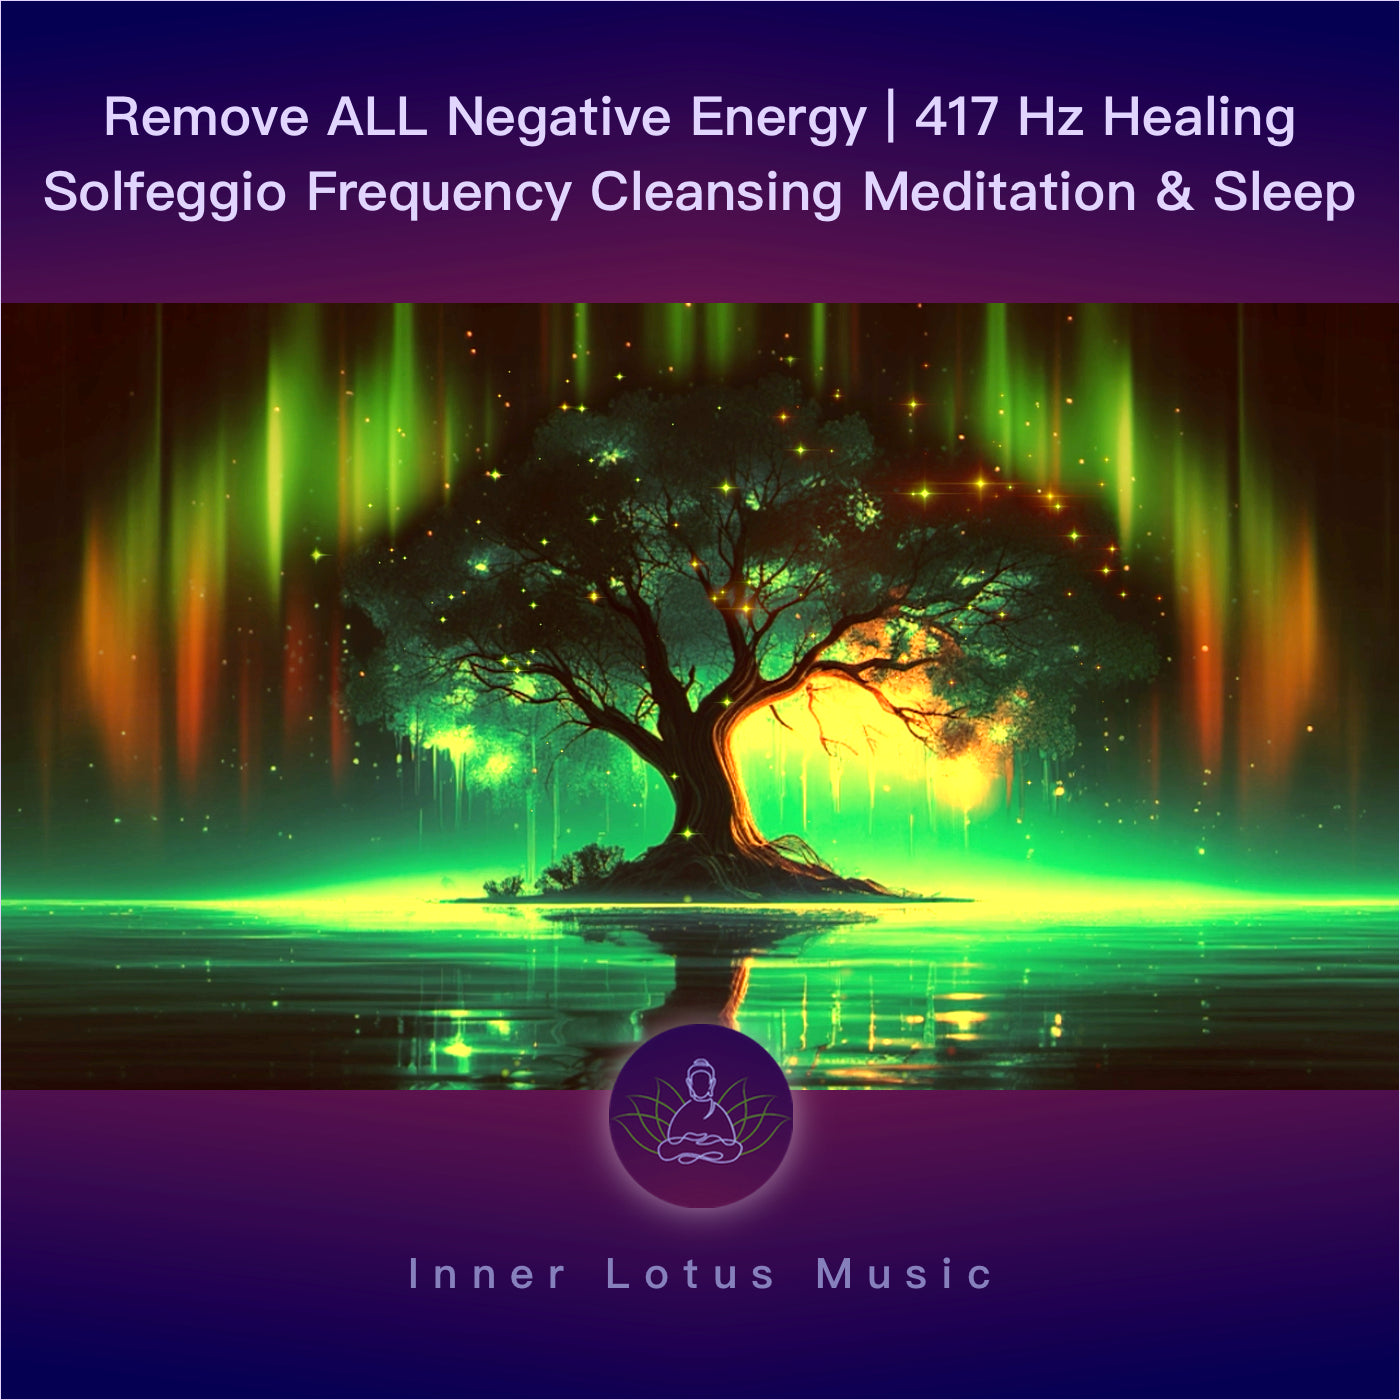 Elimina TODA Energía Negativa | Música Curativa 417Hz Frecuencia Purificación & Limpieza Energética